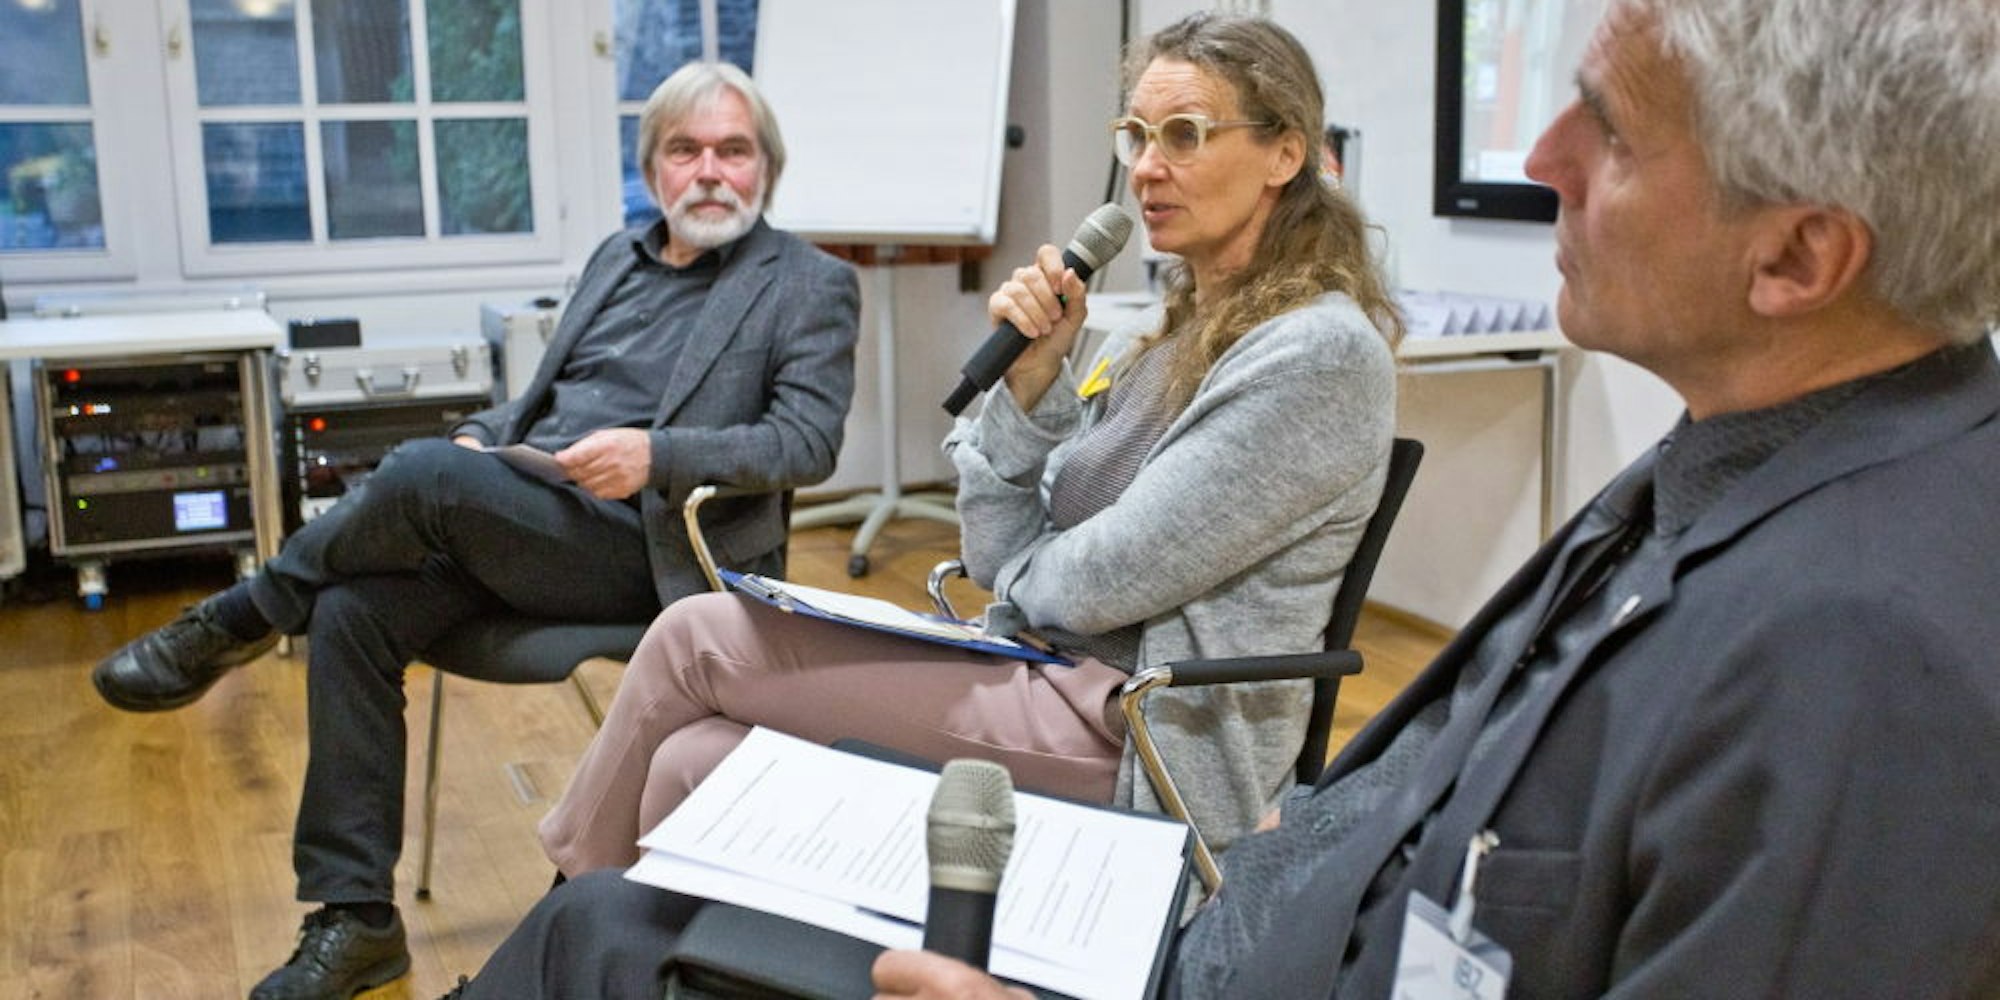 Umweltaktivistin Antje Grothus im Gespräch mit dem Aachener Polizeipräsident Dirk Weinspach (r.) und Udo Behrendes.